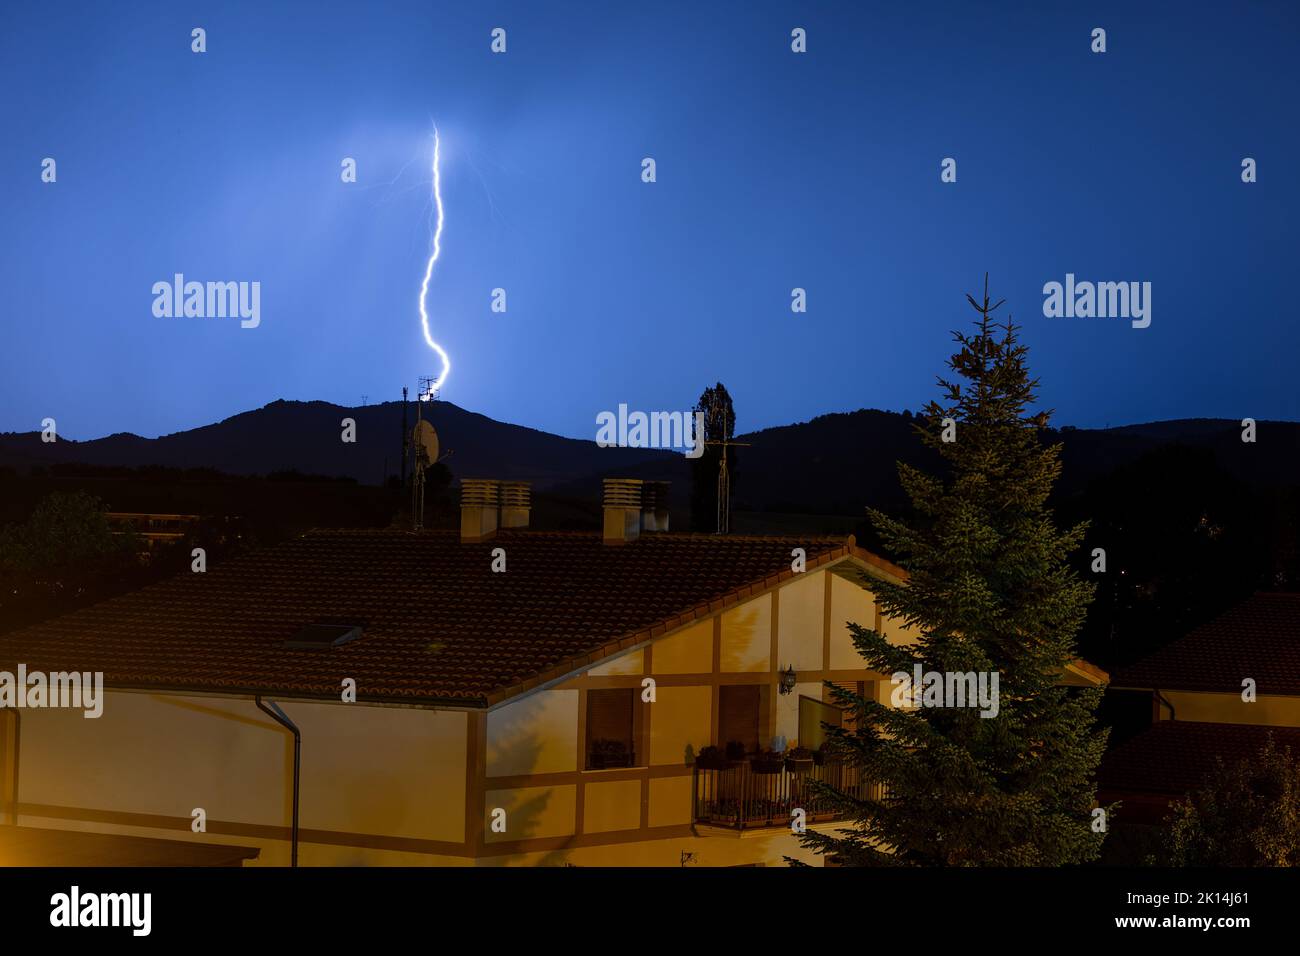 Lightning at night at Espejo, Alava, Spain Stock Photo